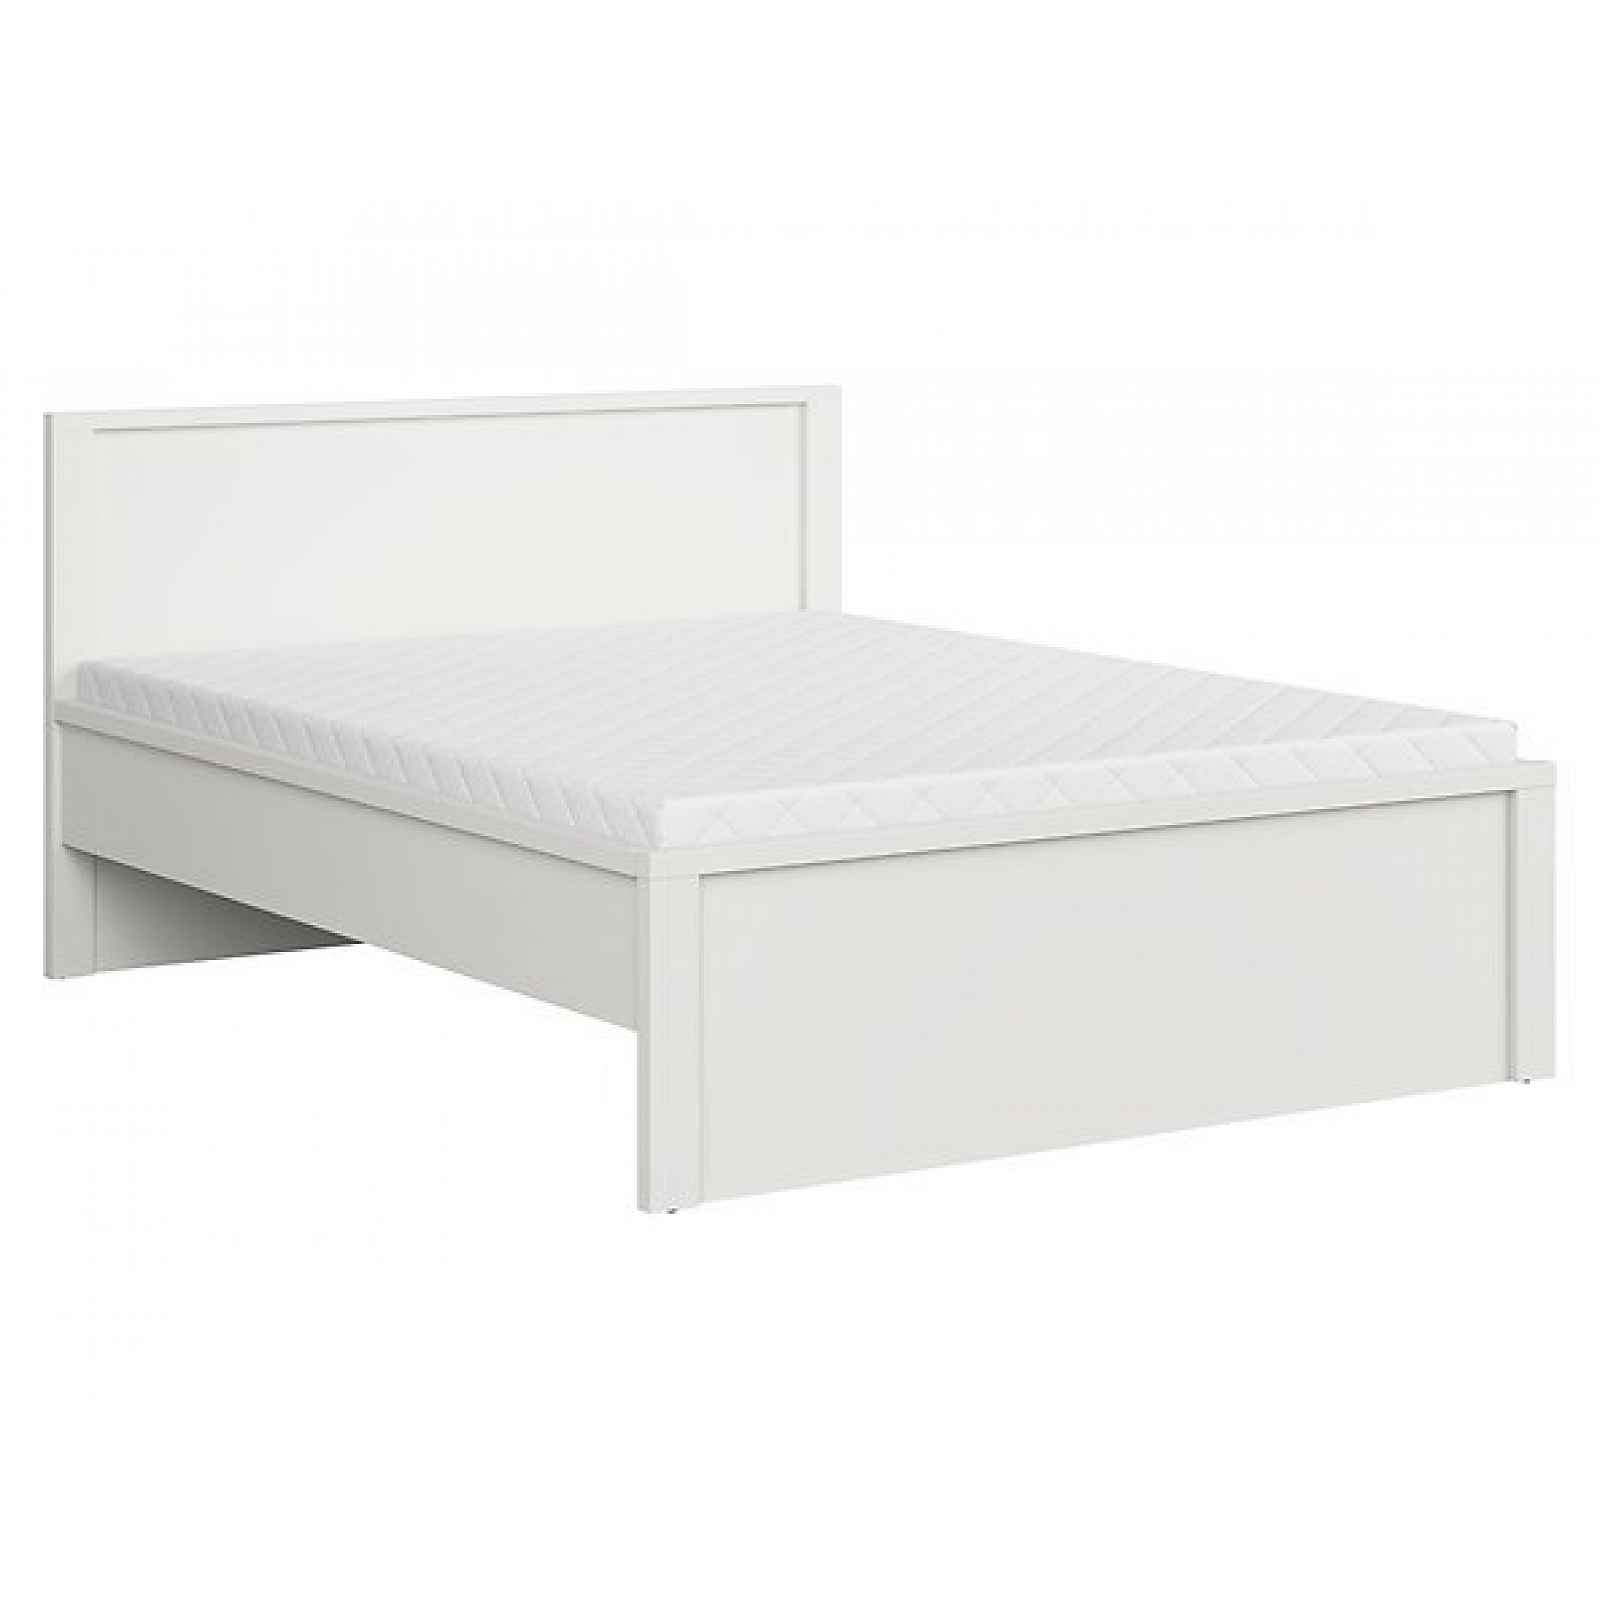 LOBATES vyšší postel 160x200 cm, bílá/bílý mat, 5 let záruka